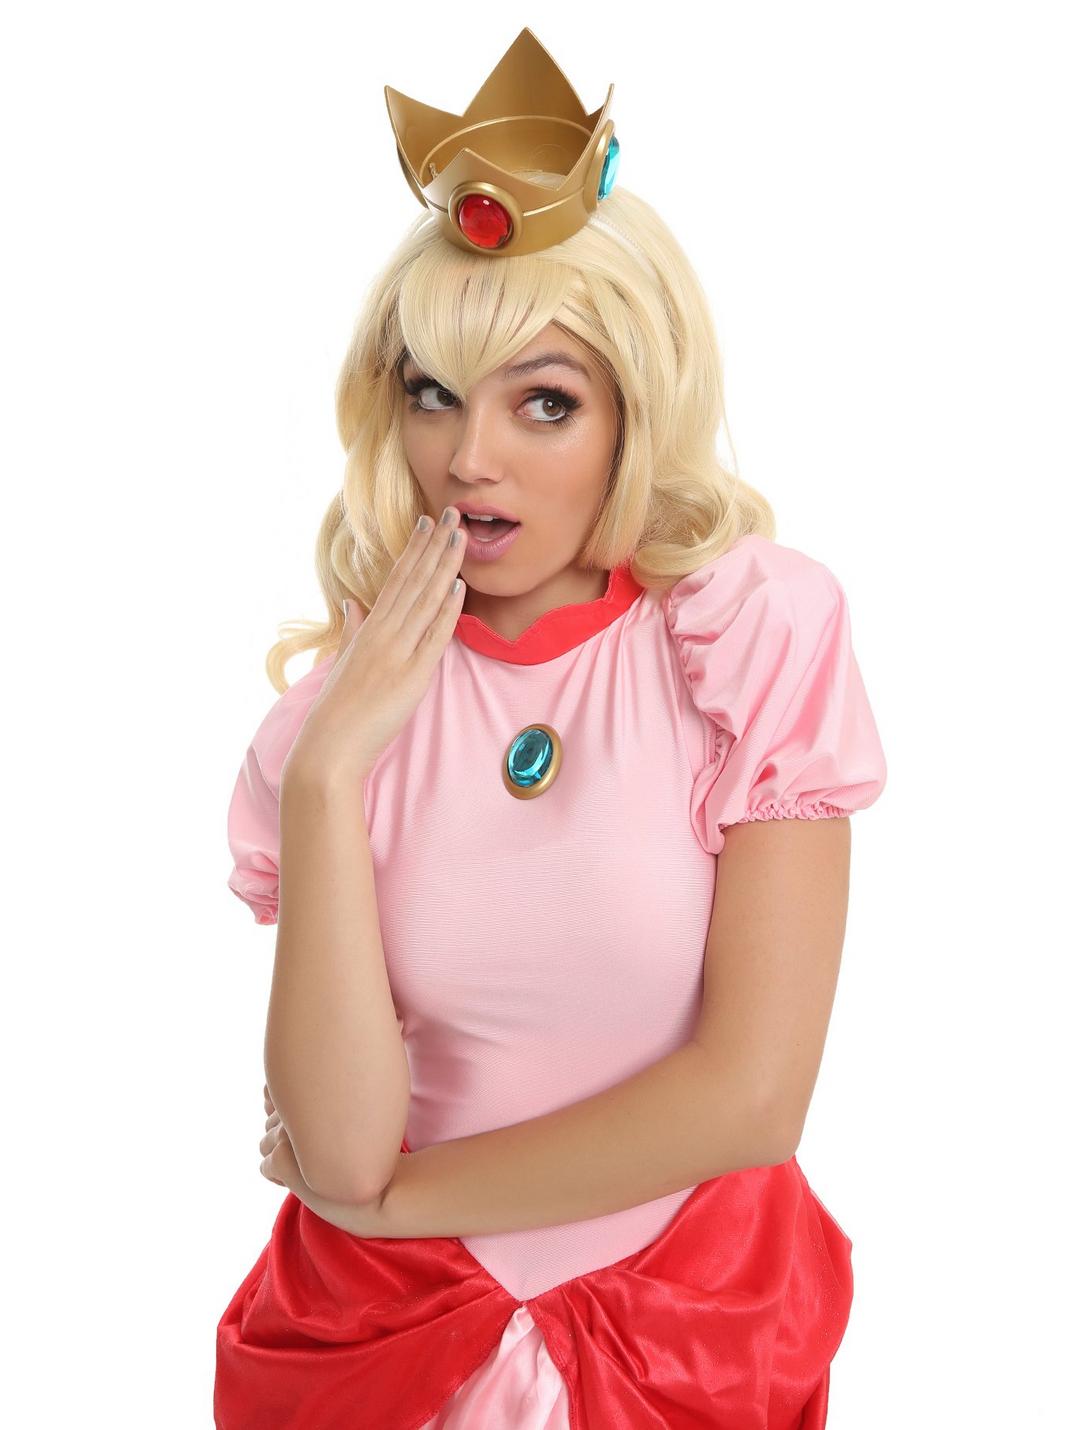 Super Mario Bros. Princess Peach Deluxe Costume, MULTI, hi-res